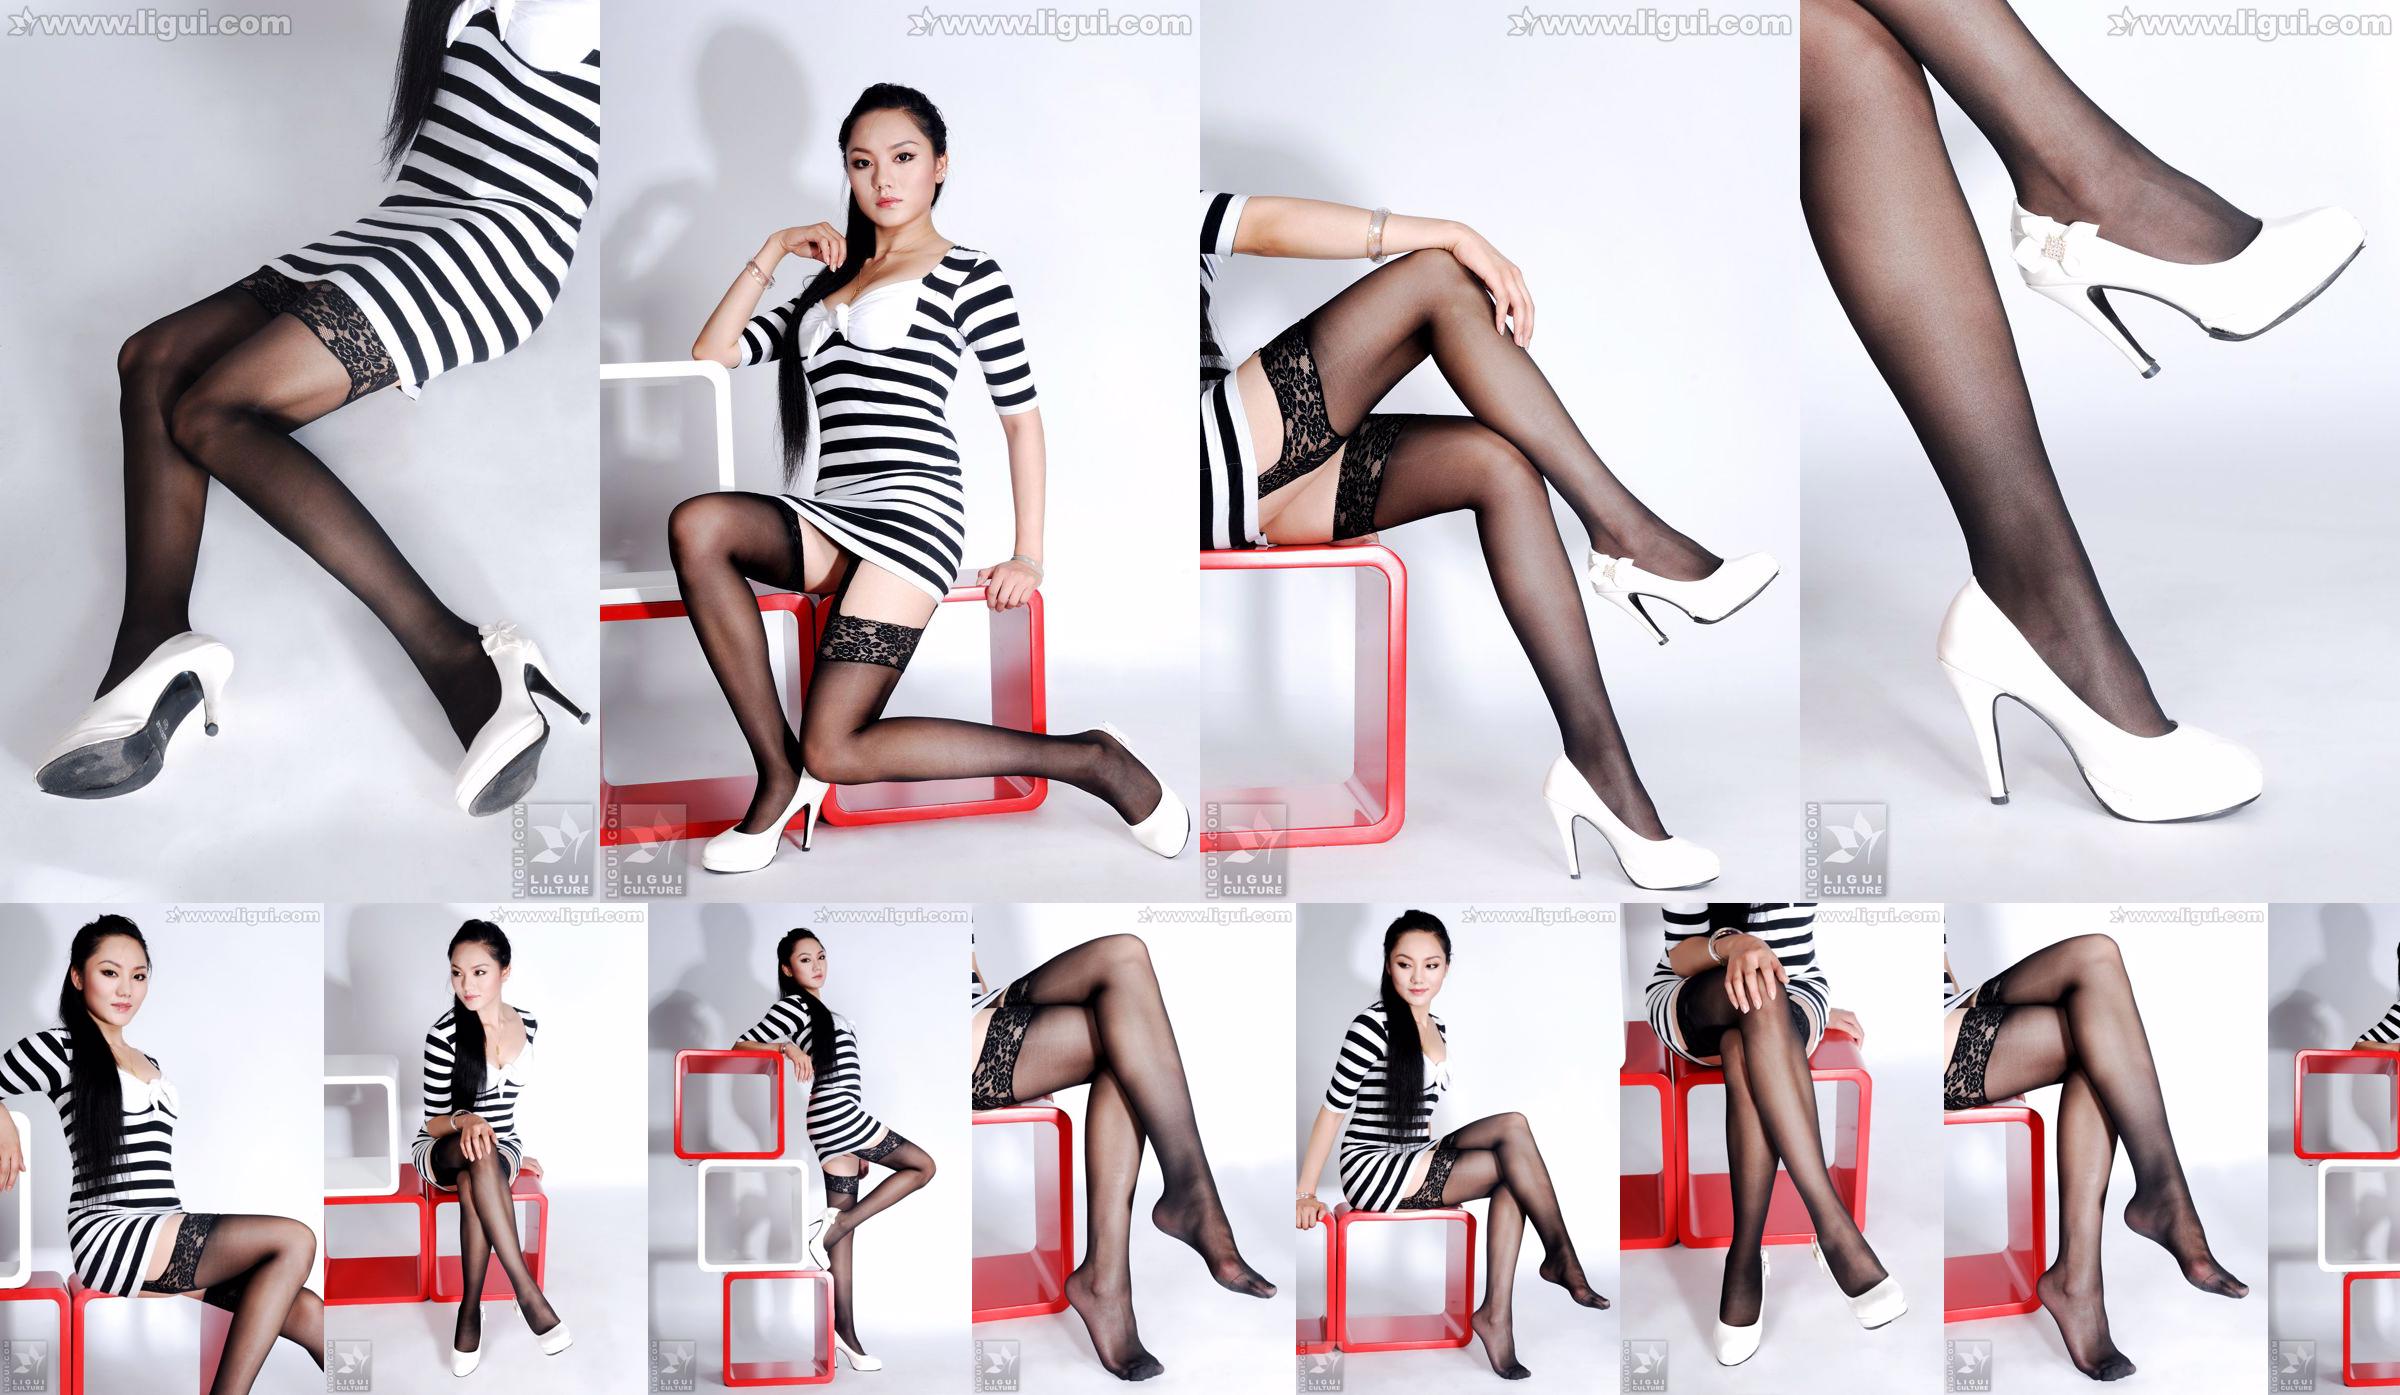 นางแบบ Yang Zi "The Charm of Stockings in Simple Home Decoration" [丽柜 LiGui] รูปถ่ายขาสวยและเท้าหยก No.590a36 หน้า 1